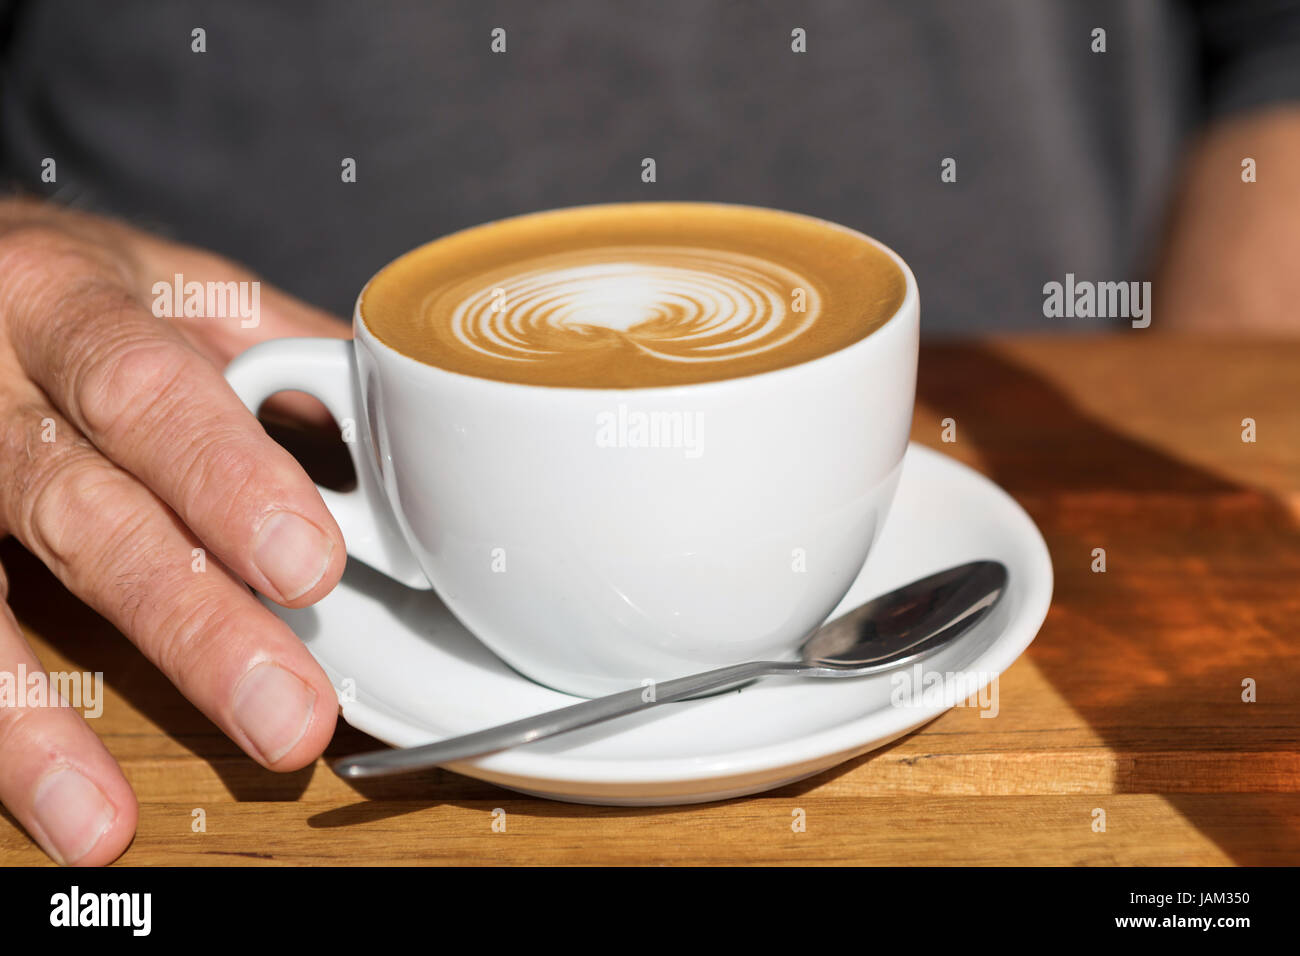 die Hand des Mannes auf dem Griff einer Tasse Latte mit einem Design und einem Löffel auf den Teller Stockfoto